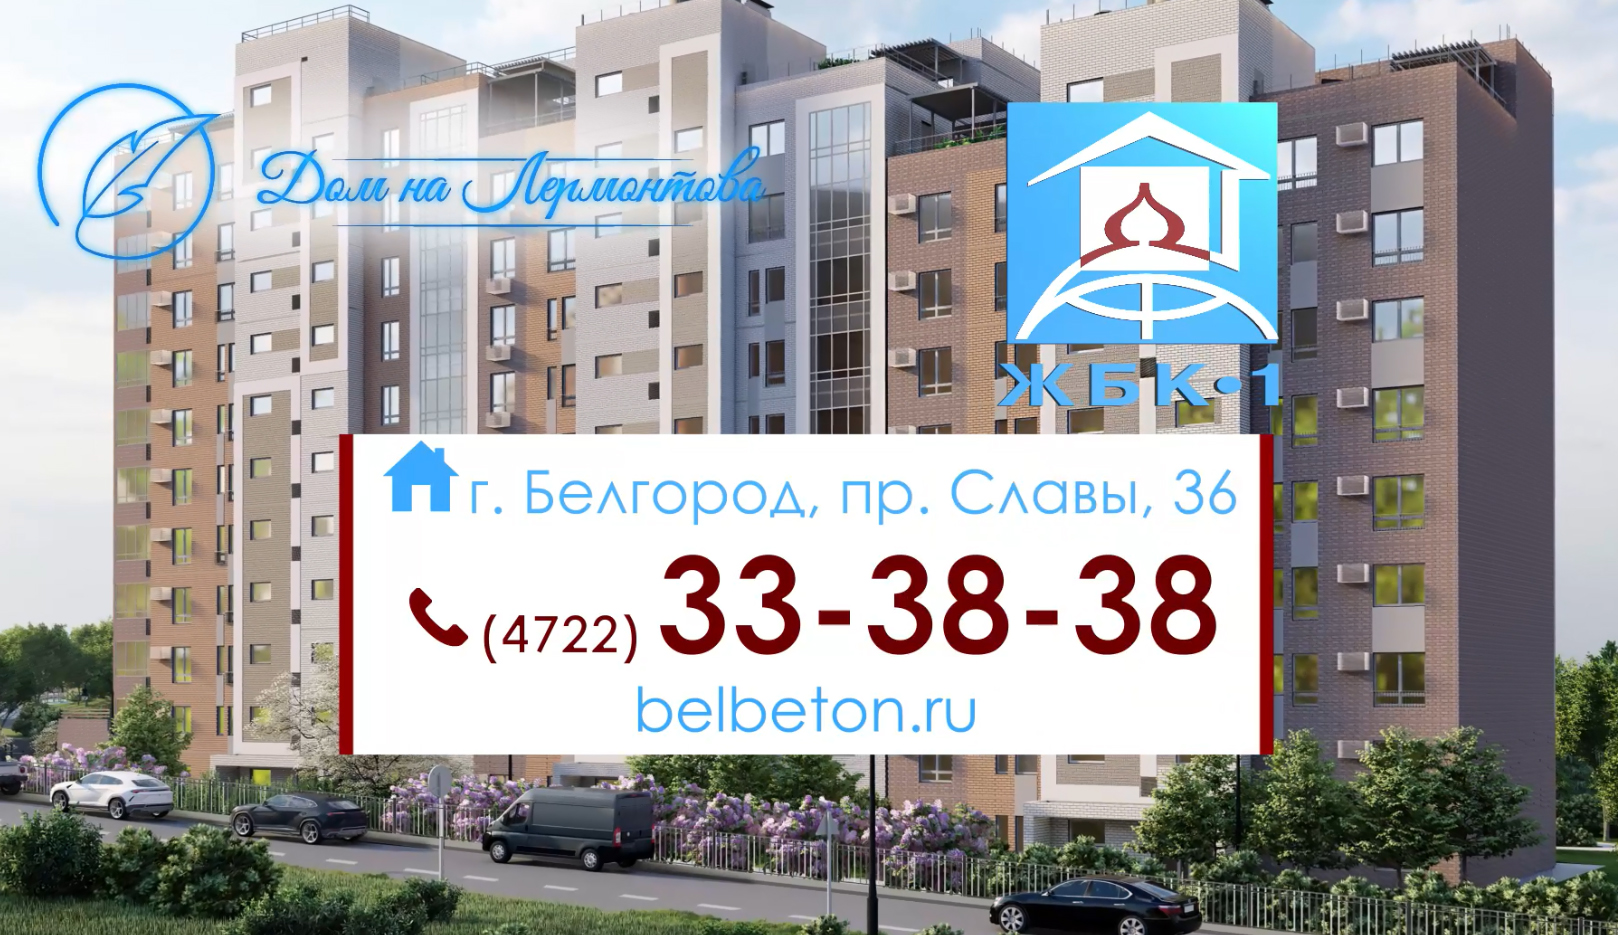 Квартиры в доме по ул.Лермонтова от 39 м2 стоимостью от 4,2 млн.руб. «под ключ».